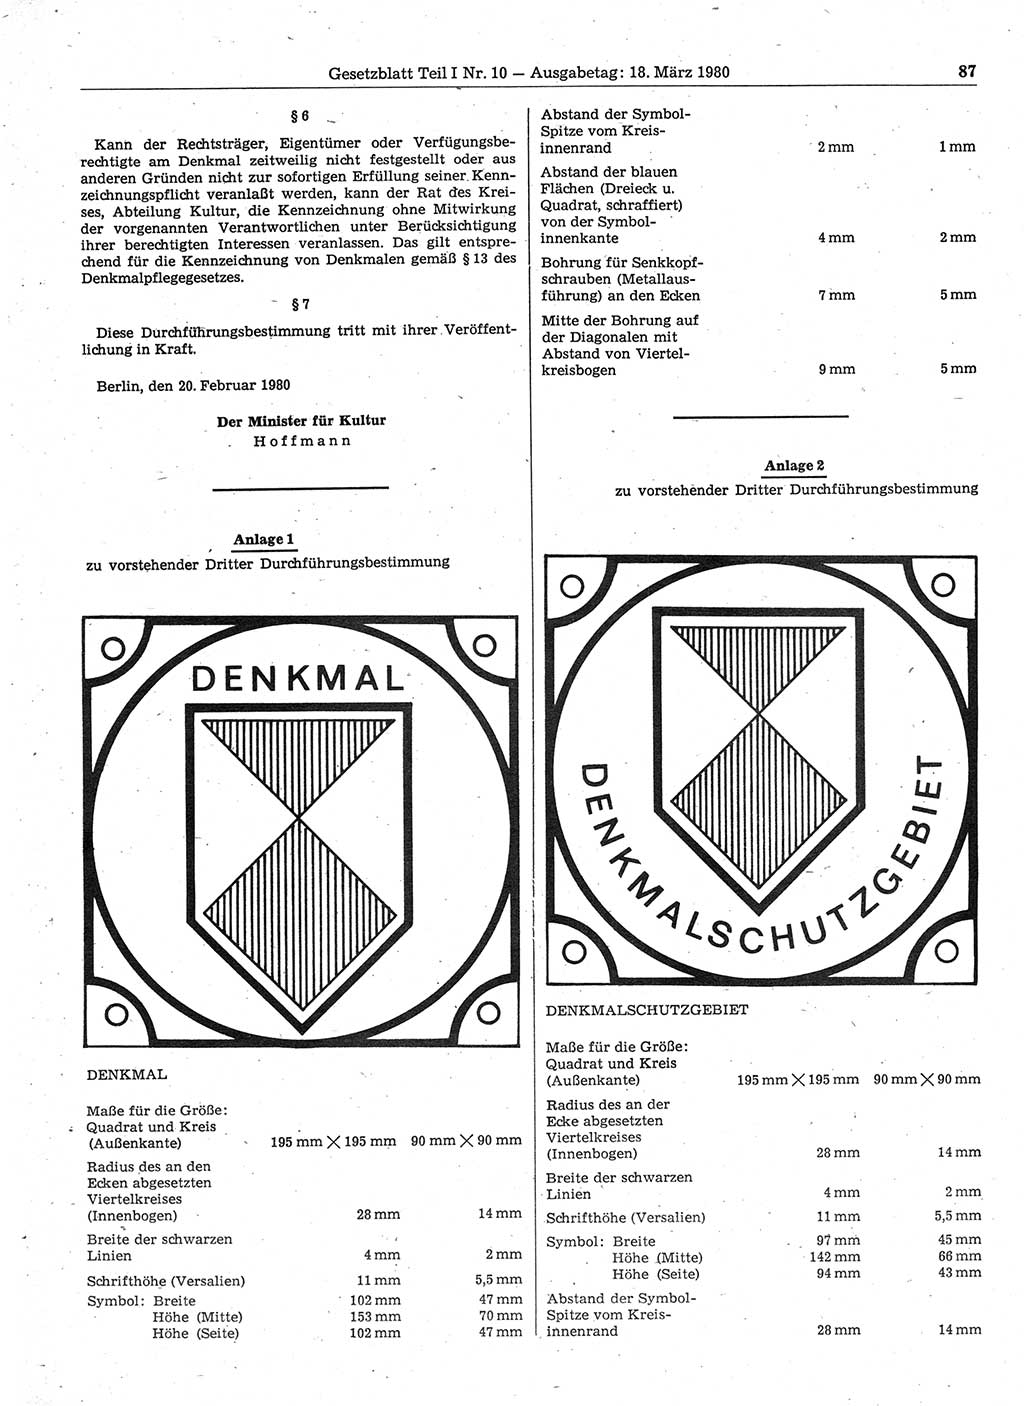 Gesetzblatt (GBl.) der Deutschen Demokratischen Republik (DDR) Teil Ⅰ 1980, Seite 87 (GBl. DDR Ⅰ 1980, S. 87)